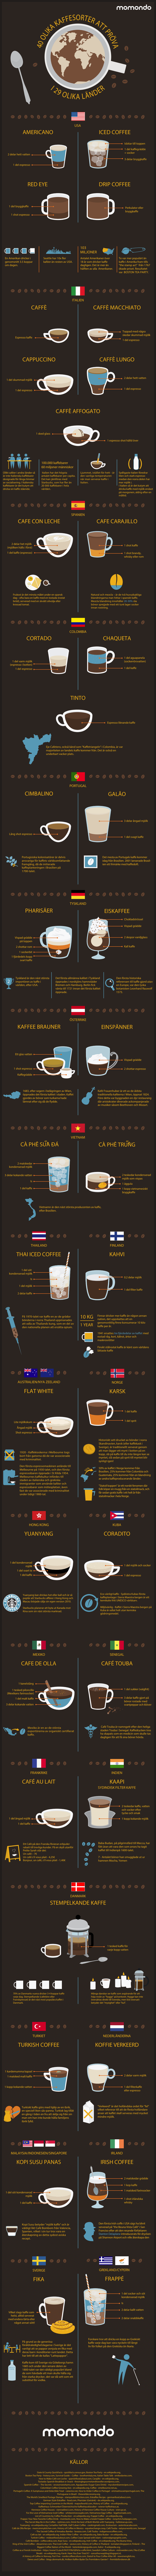 40 olika sätt att fira Kaffets Dag